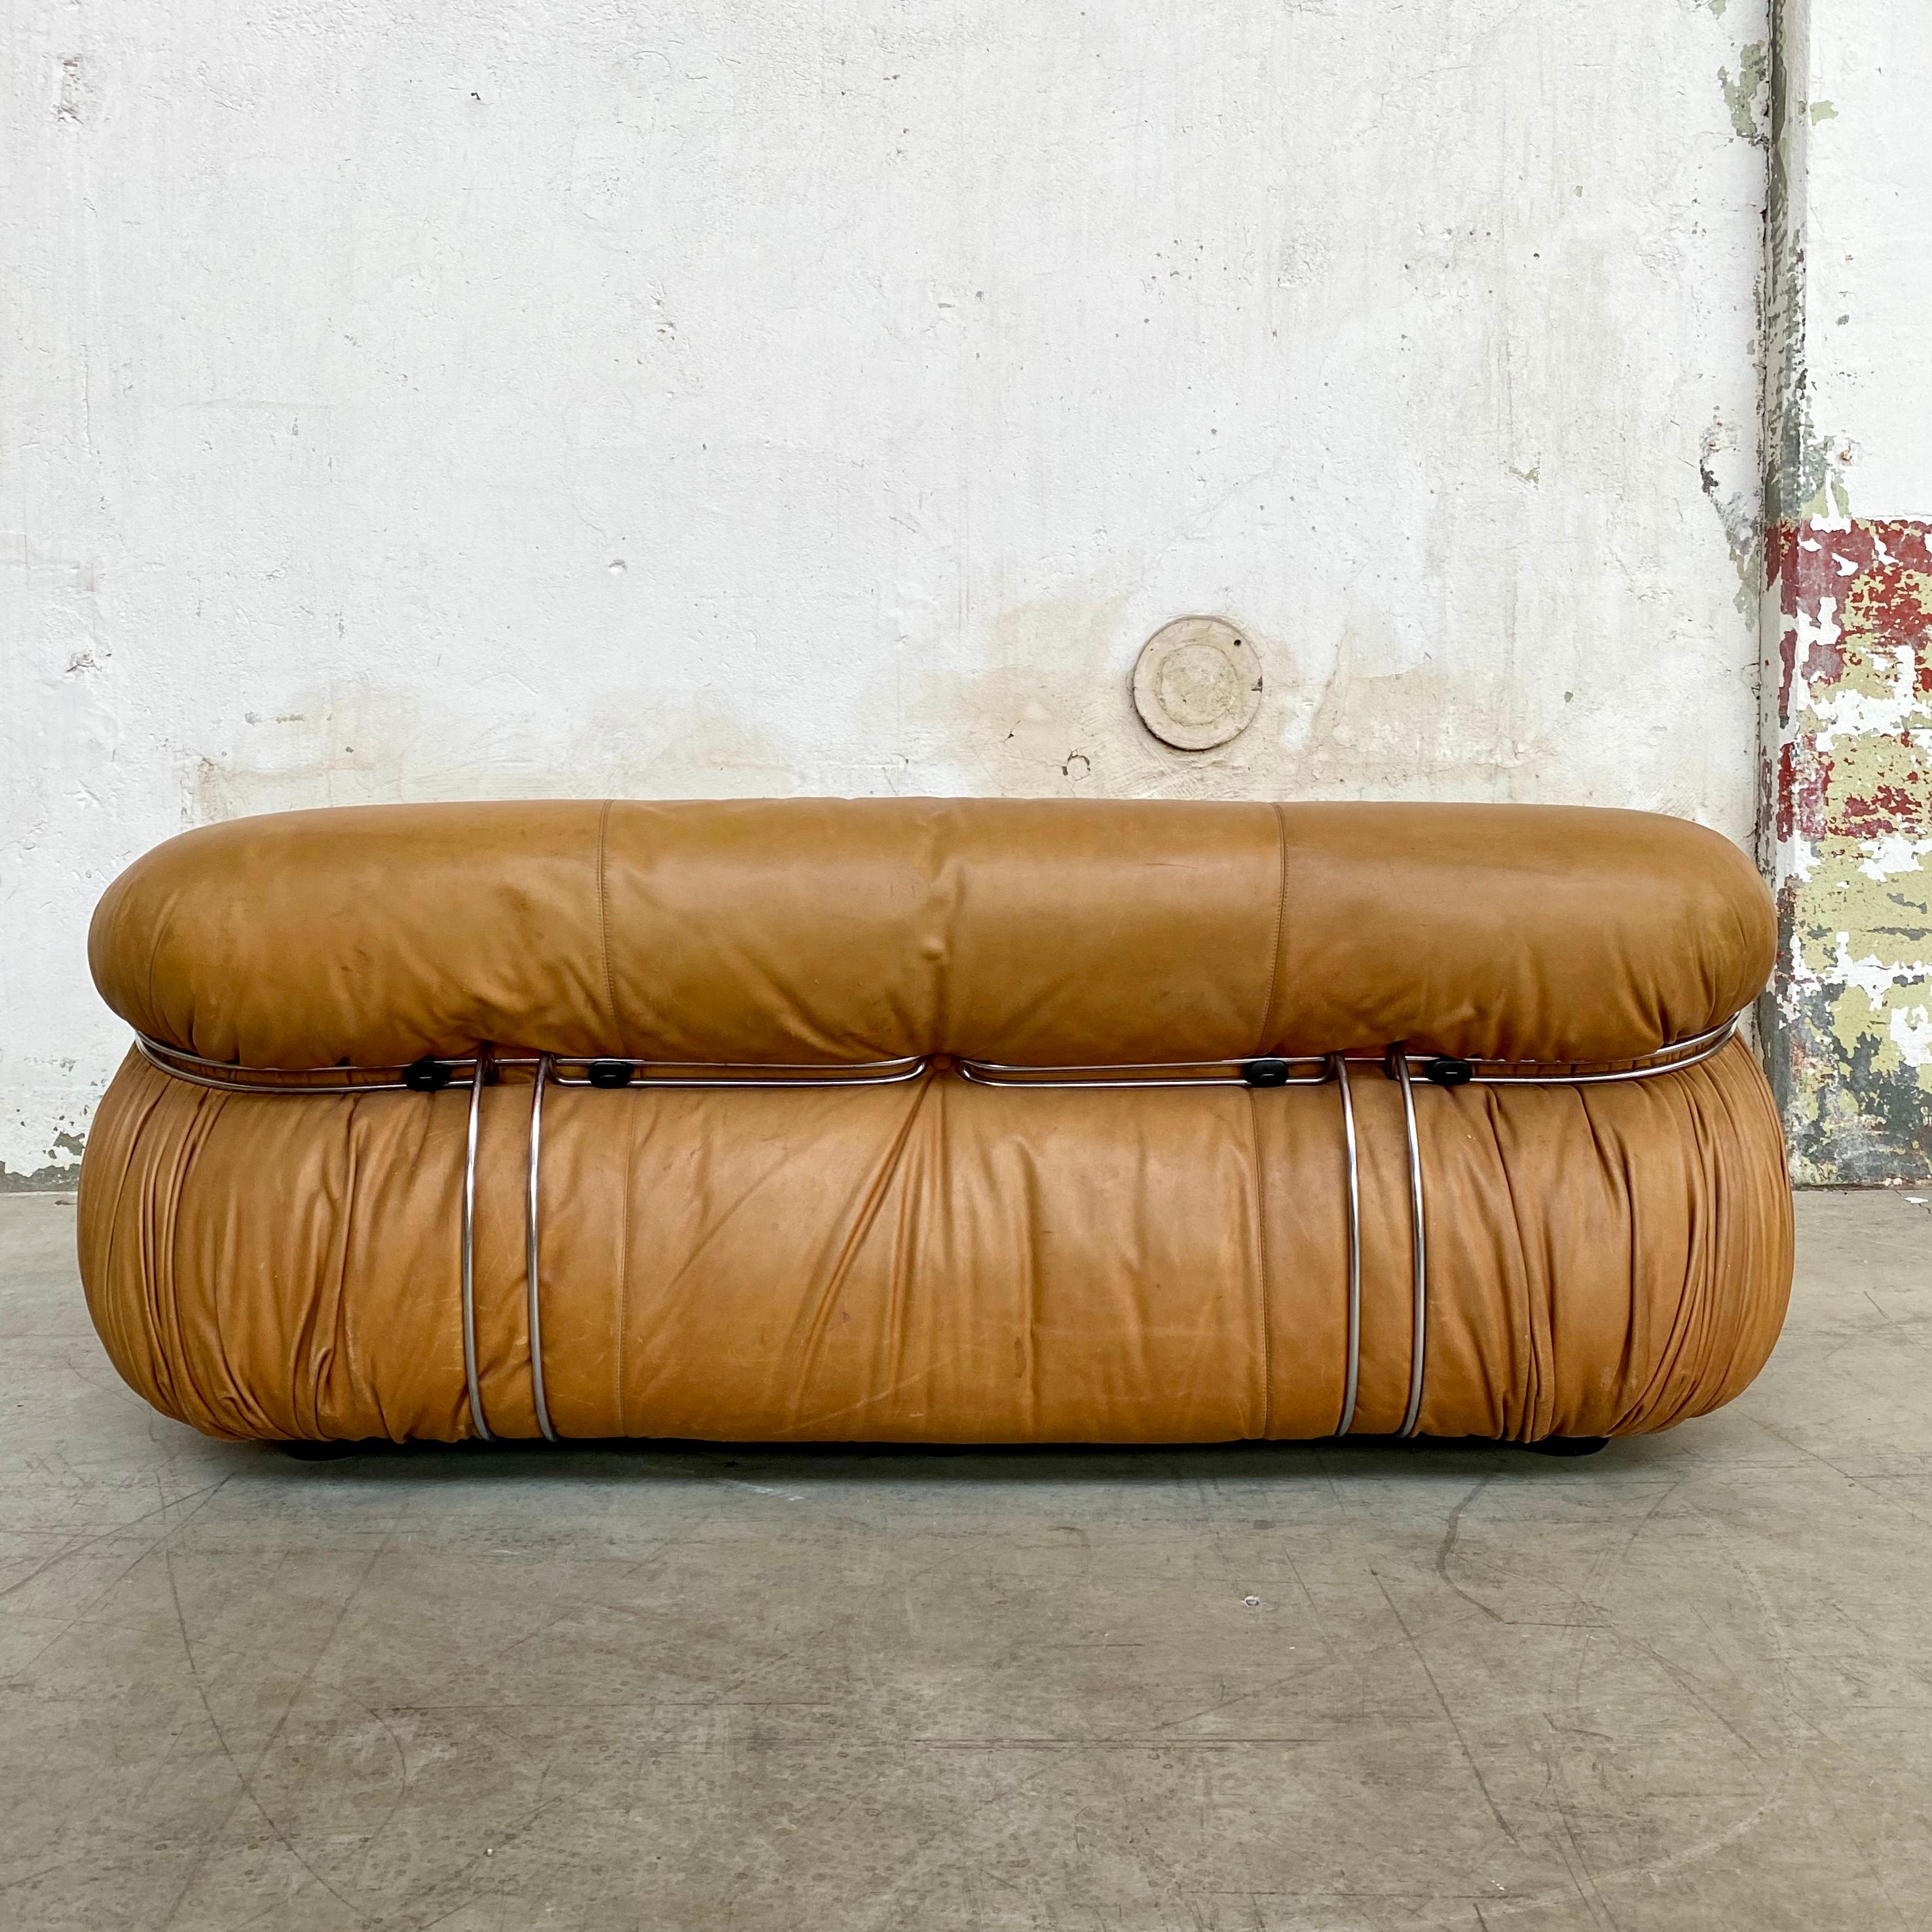 Leather Afra & Tobia Scarpa “Soriana” Sofa for Cassina, 1969